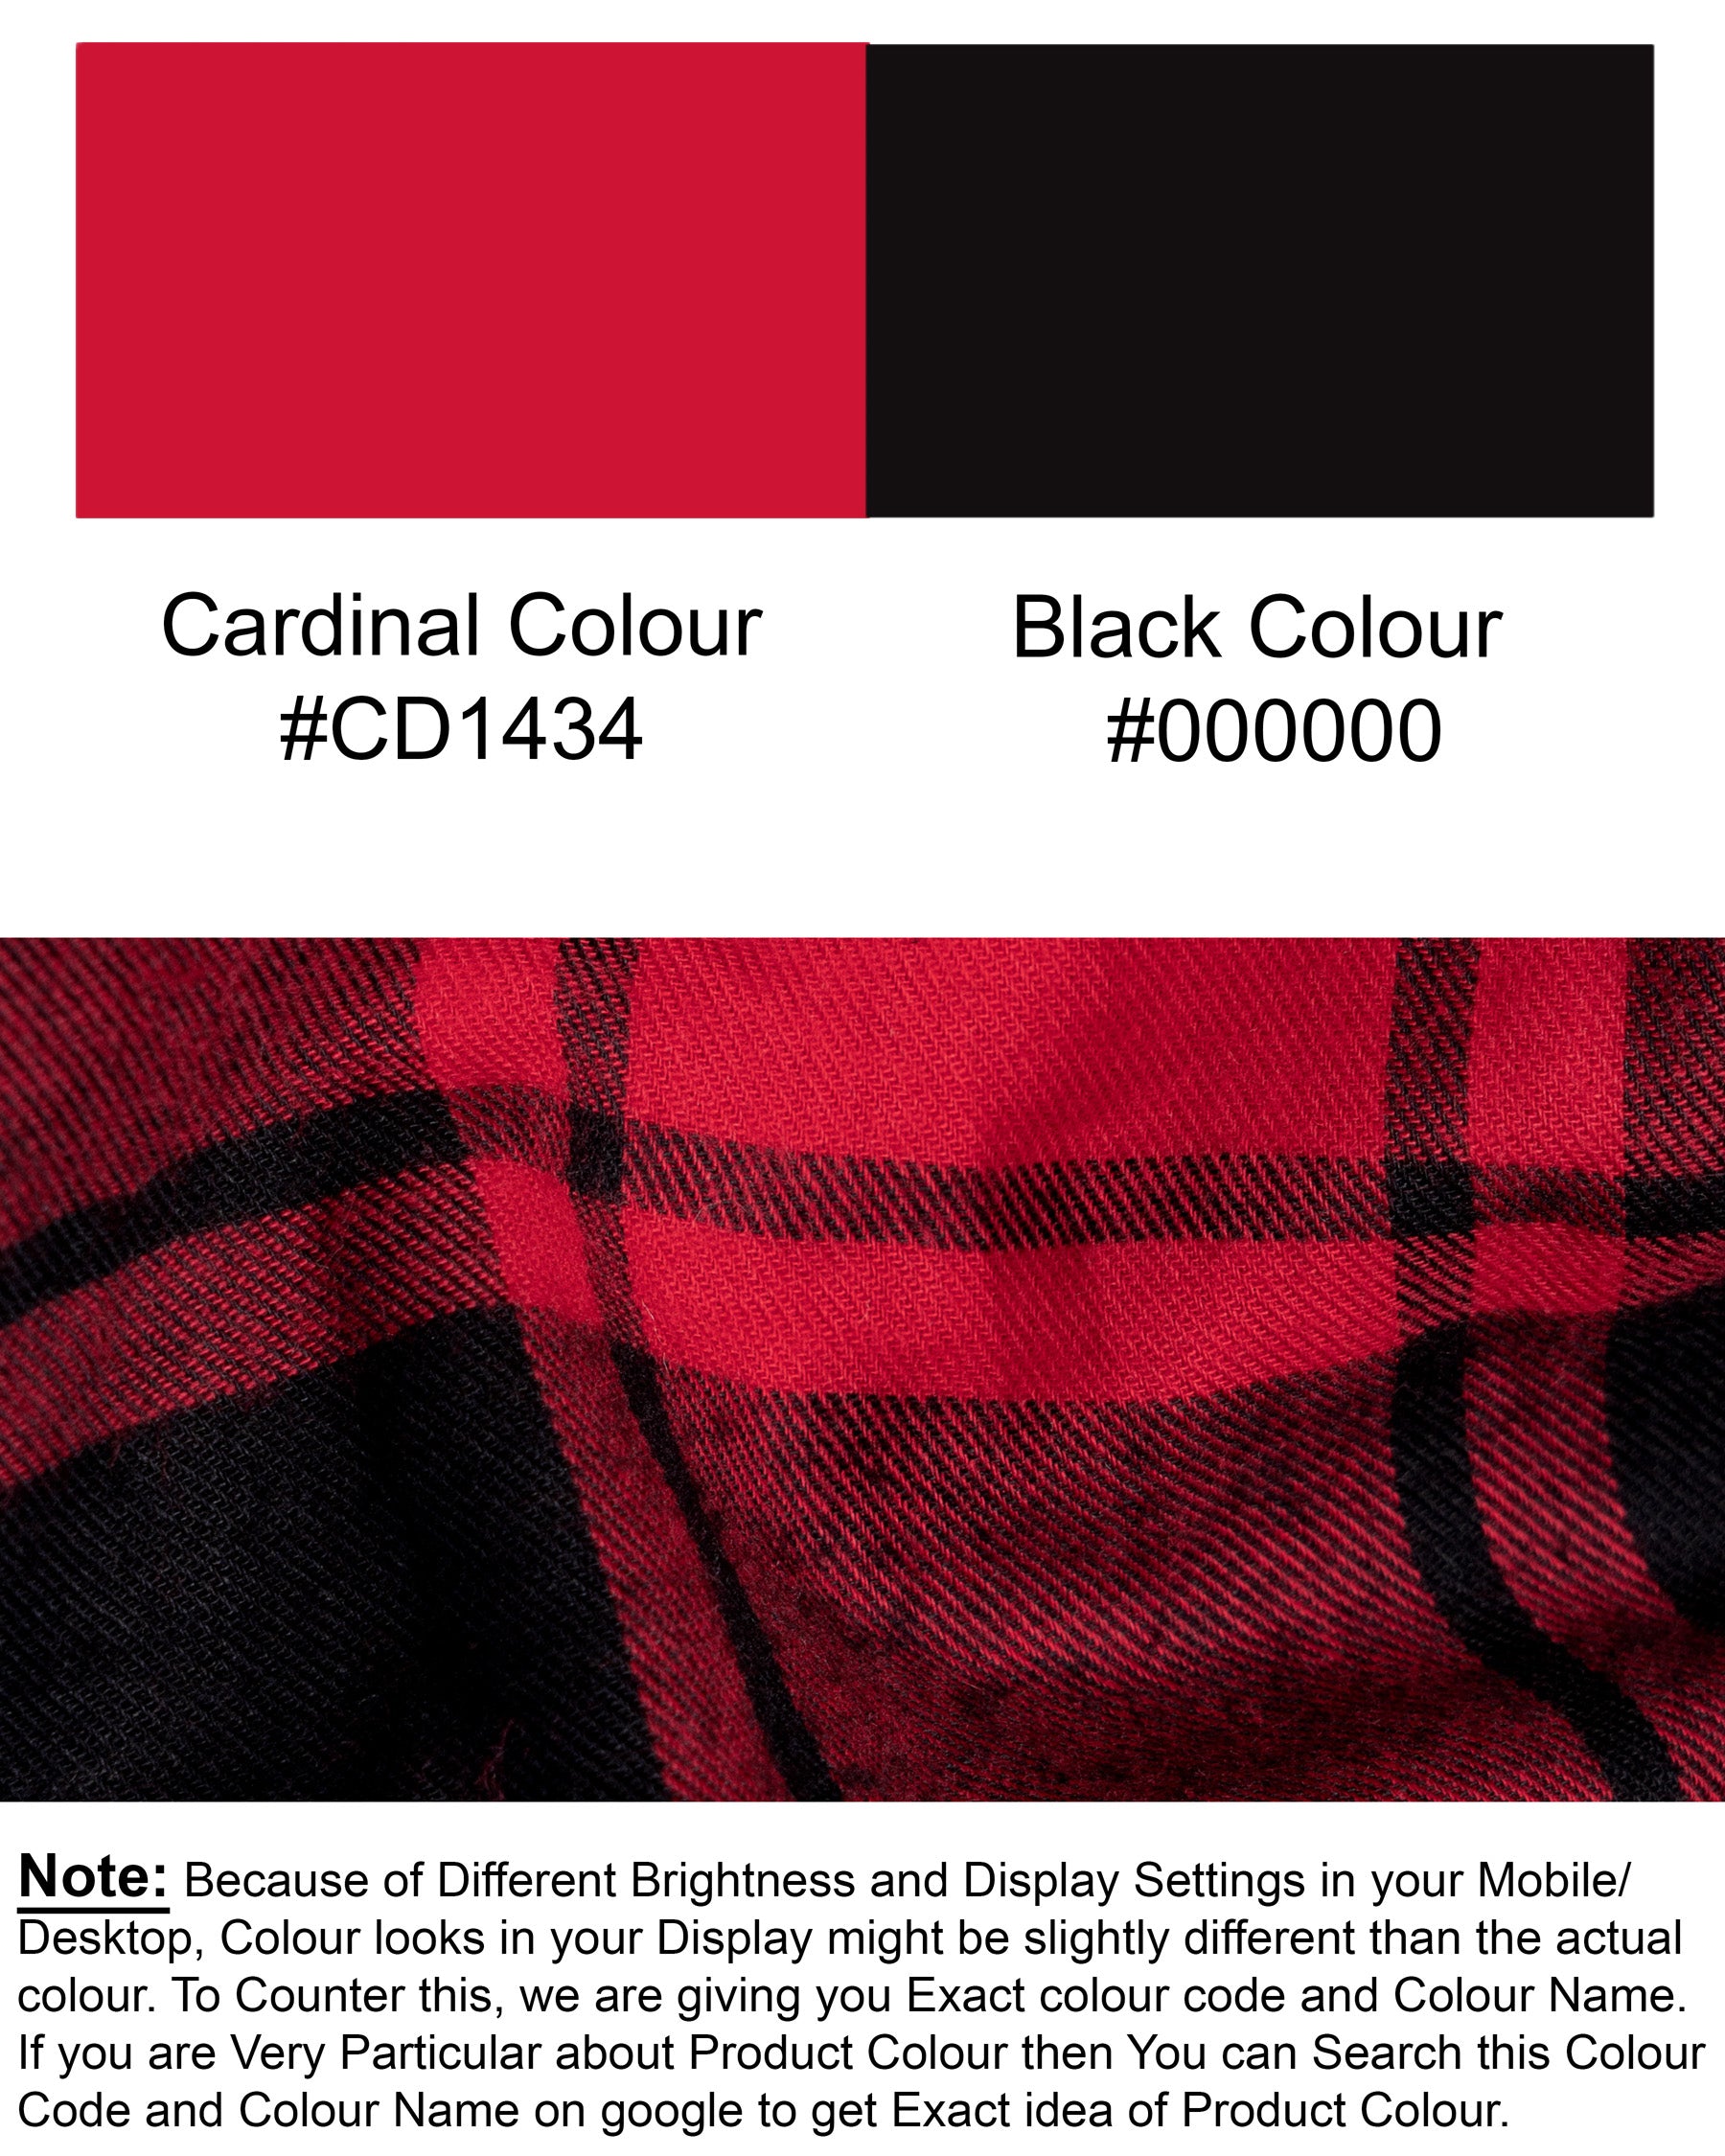 Cardinal Red with Jade Black Plaid Premium Cotton Flannel Shirt 5322-BD-BLK-38, 5322-BD-BLK-H-38, 5322-BD-BLK-39, 5322-BD-BLK-H-39, 5322-BD-BLK-40, 5322-BD-BLK-H-40, 5322-BD-BLK-42, 5322-BD-BLK-H-42, 5322-BD-BLK-44, 5322-BD-BLK-H-44, 5322-BD-BLK-46, 5322-BD-BLK-H-46, 5322-BD-BLK-48, 5322-BD-BLK-H-48, 5322-BD-BLK-50, 5322-BD-BLK-H-50, 5322-BD-BLK-52, 5322-BD-BLK-H-52